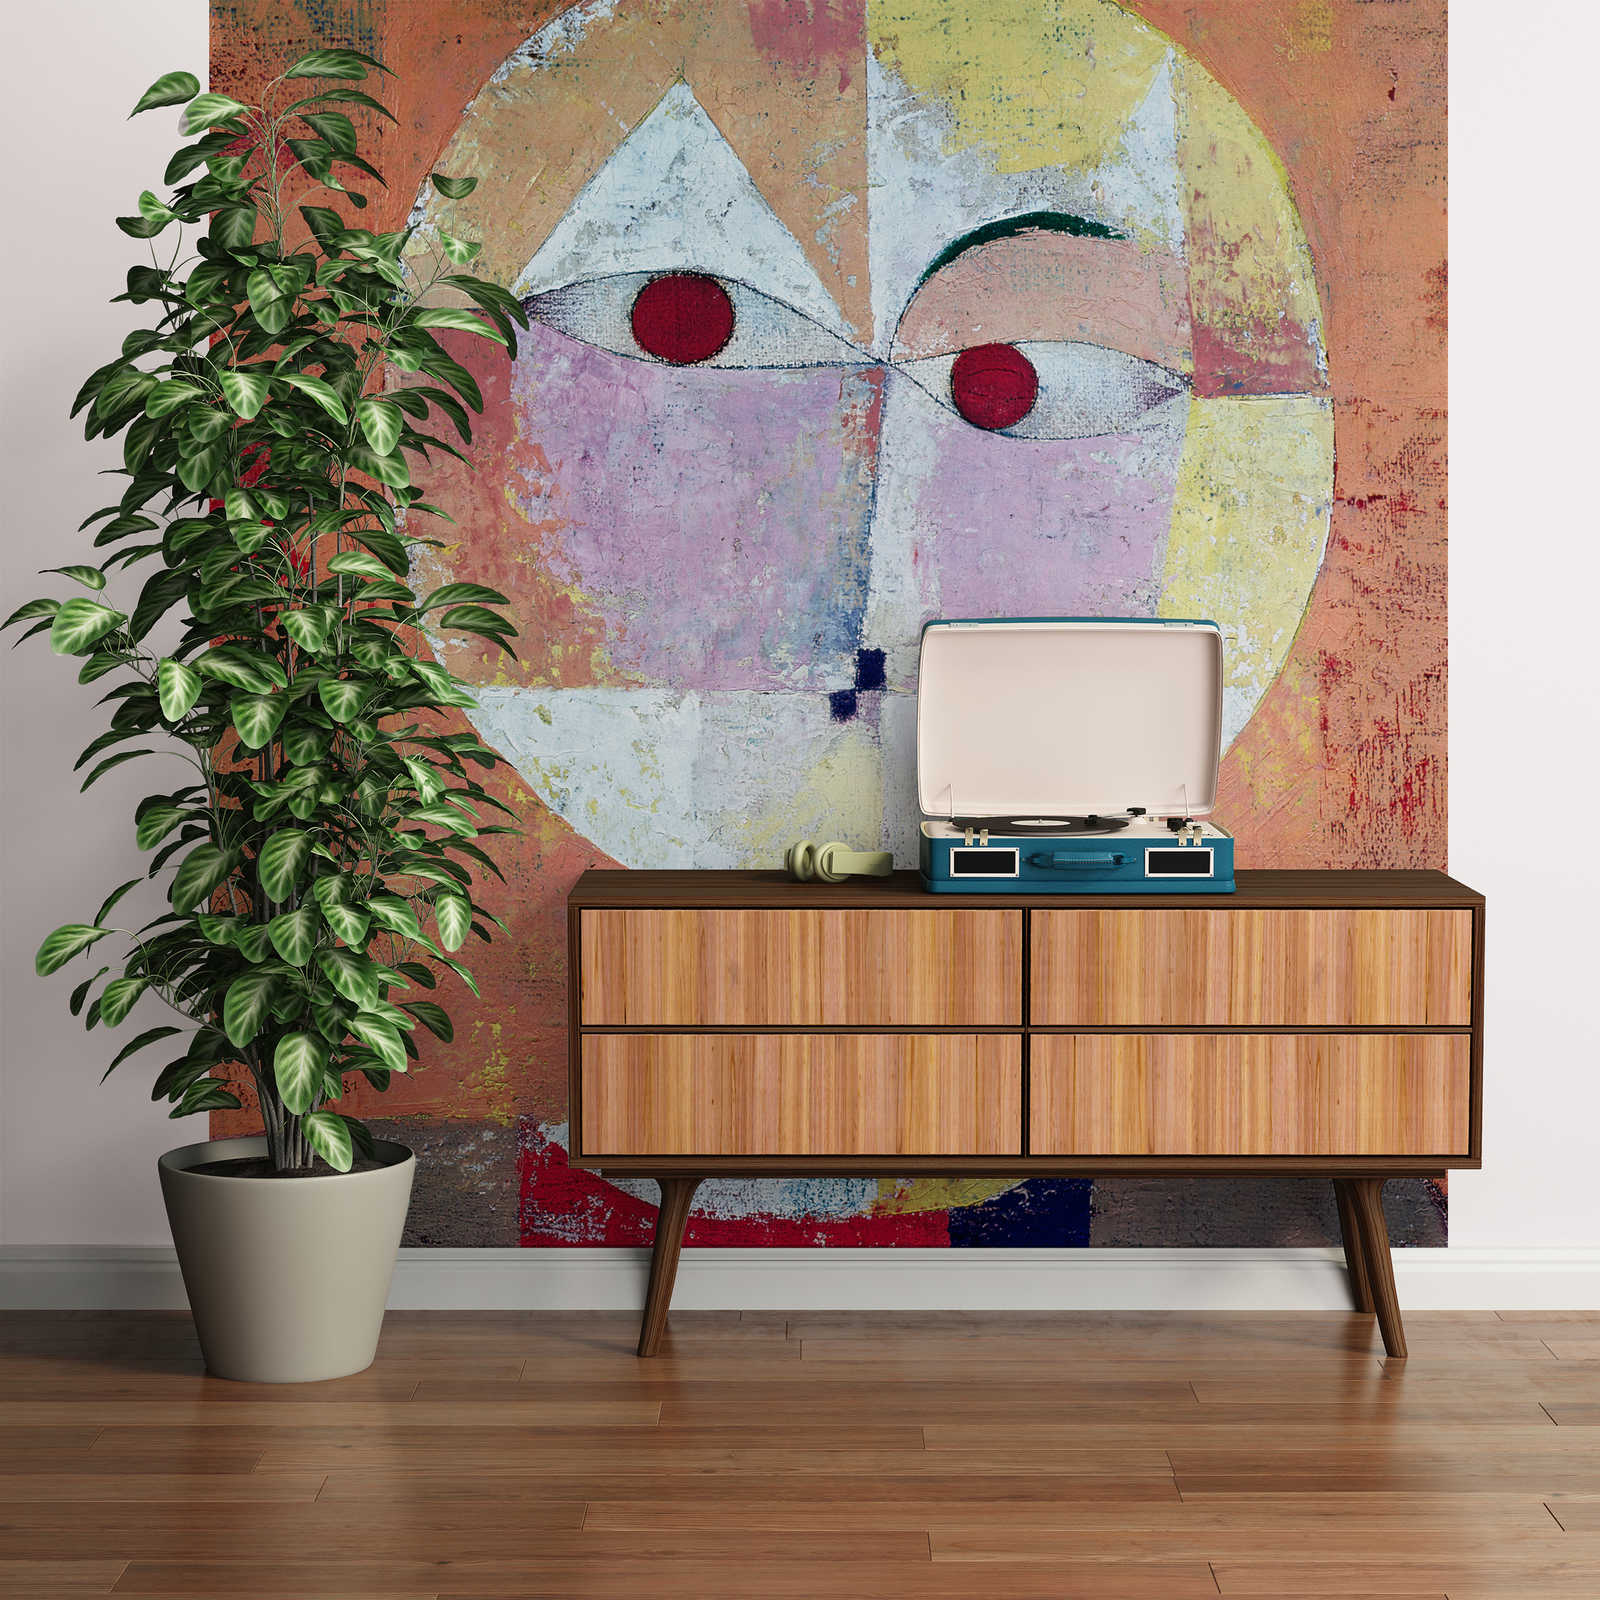             Senecio" muurschildering van Paul Klee
        